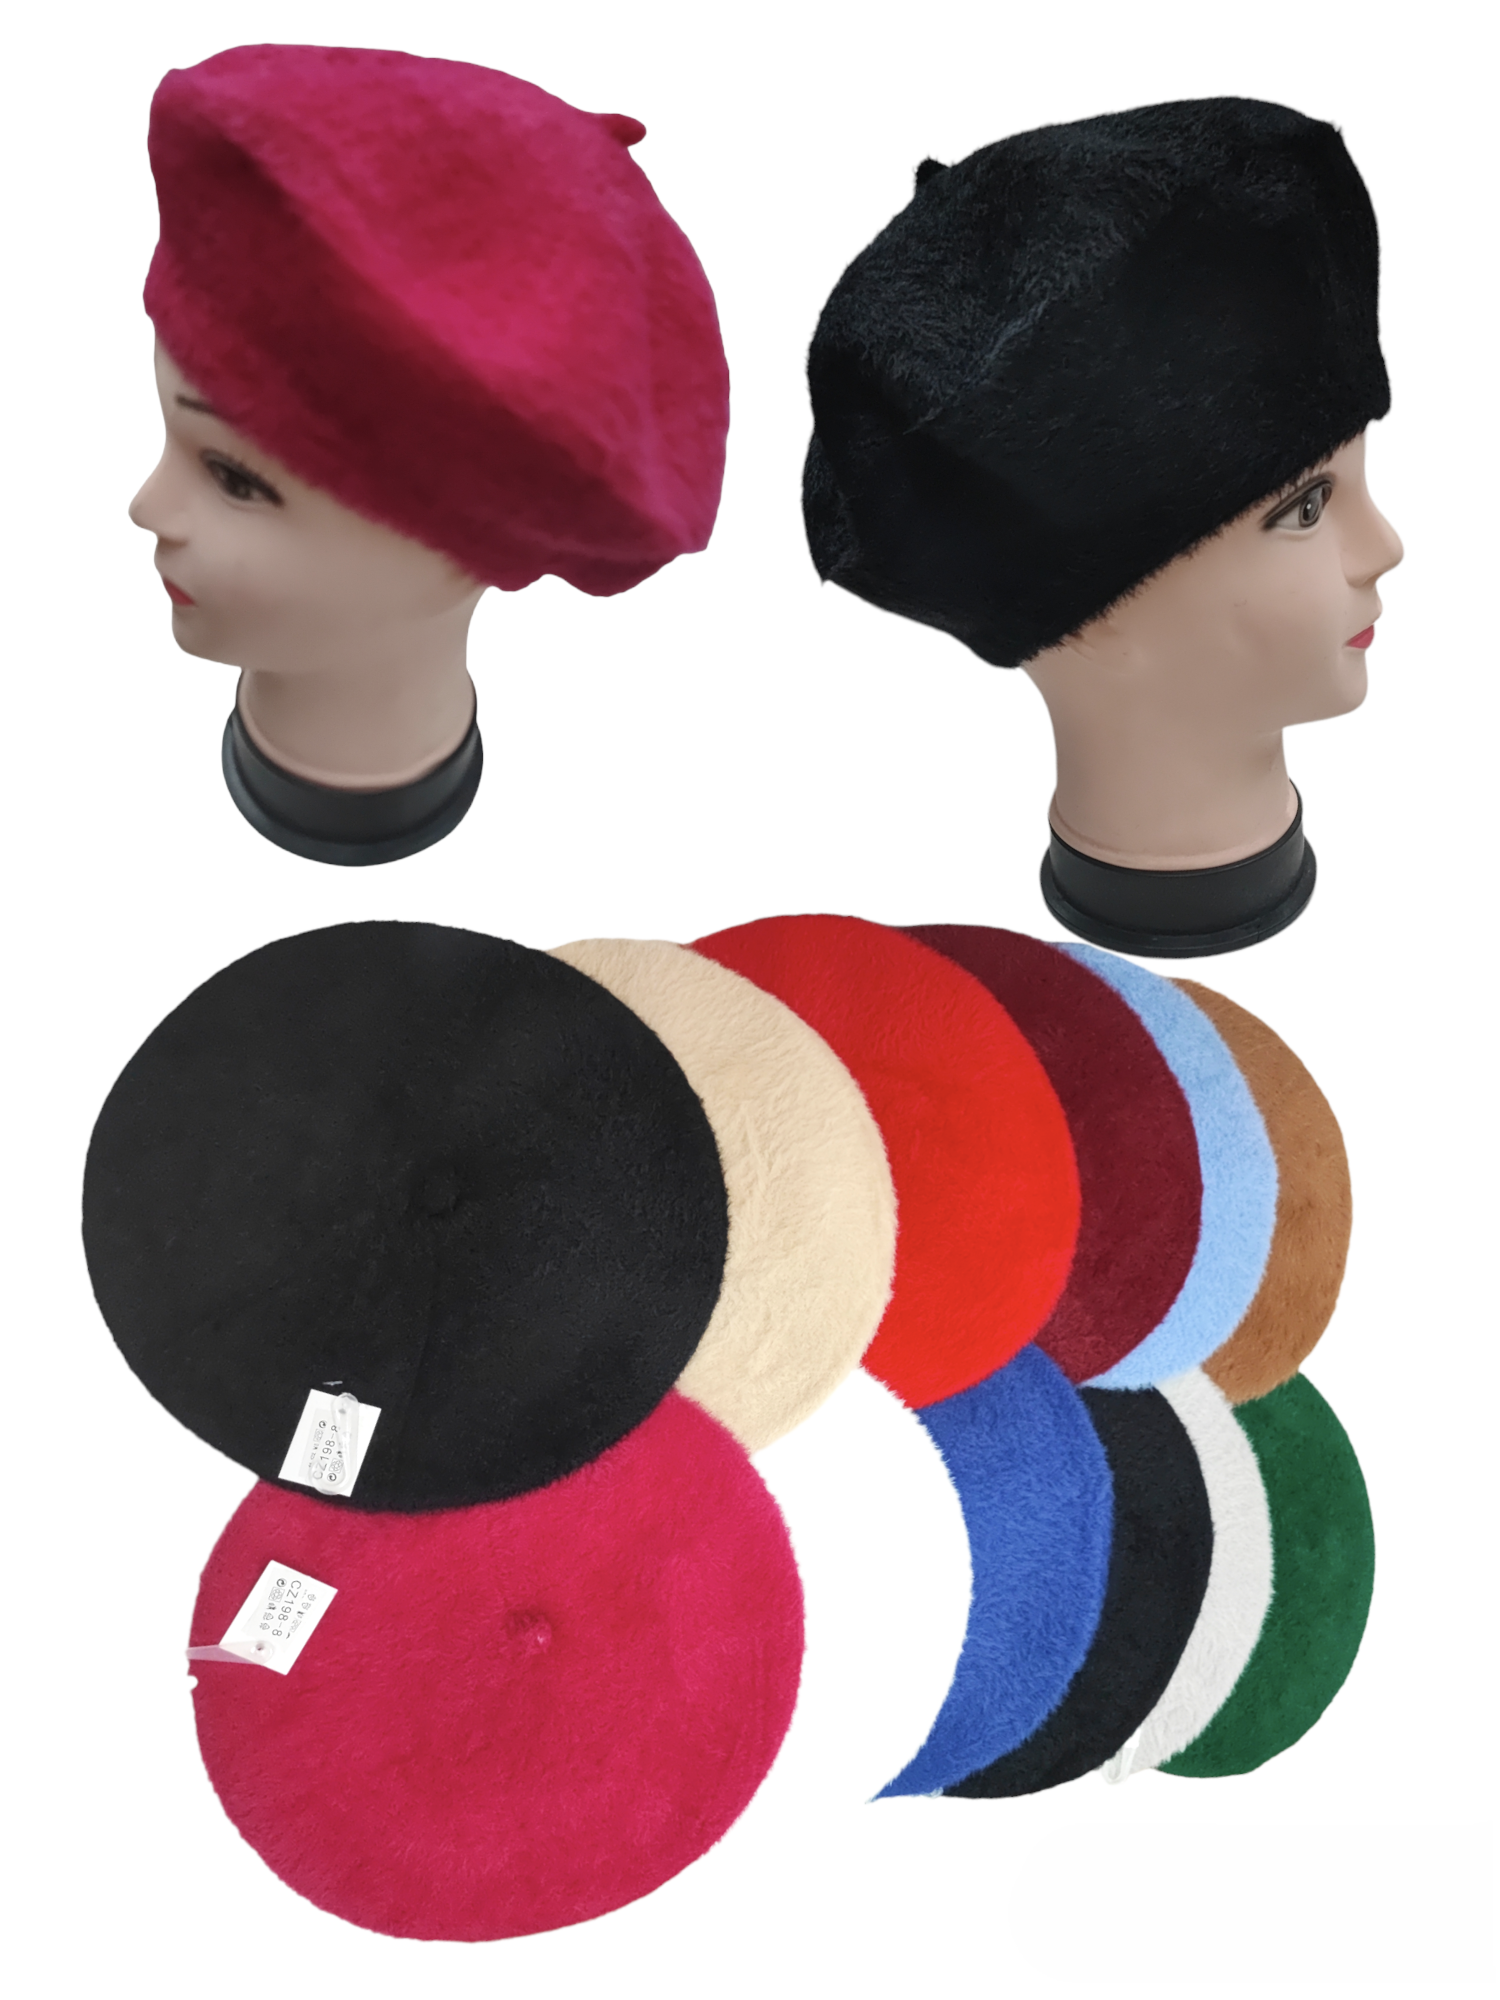 Chapeaux, Casquettes Et Bonnets - Femme - Accessoires - Femme - Mode Et  Beauté - Categorie - Angers shopping